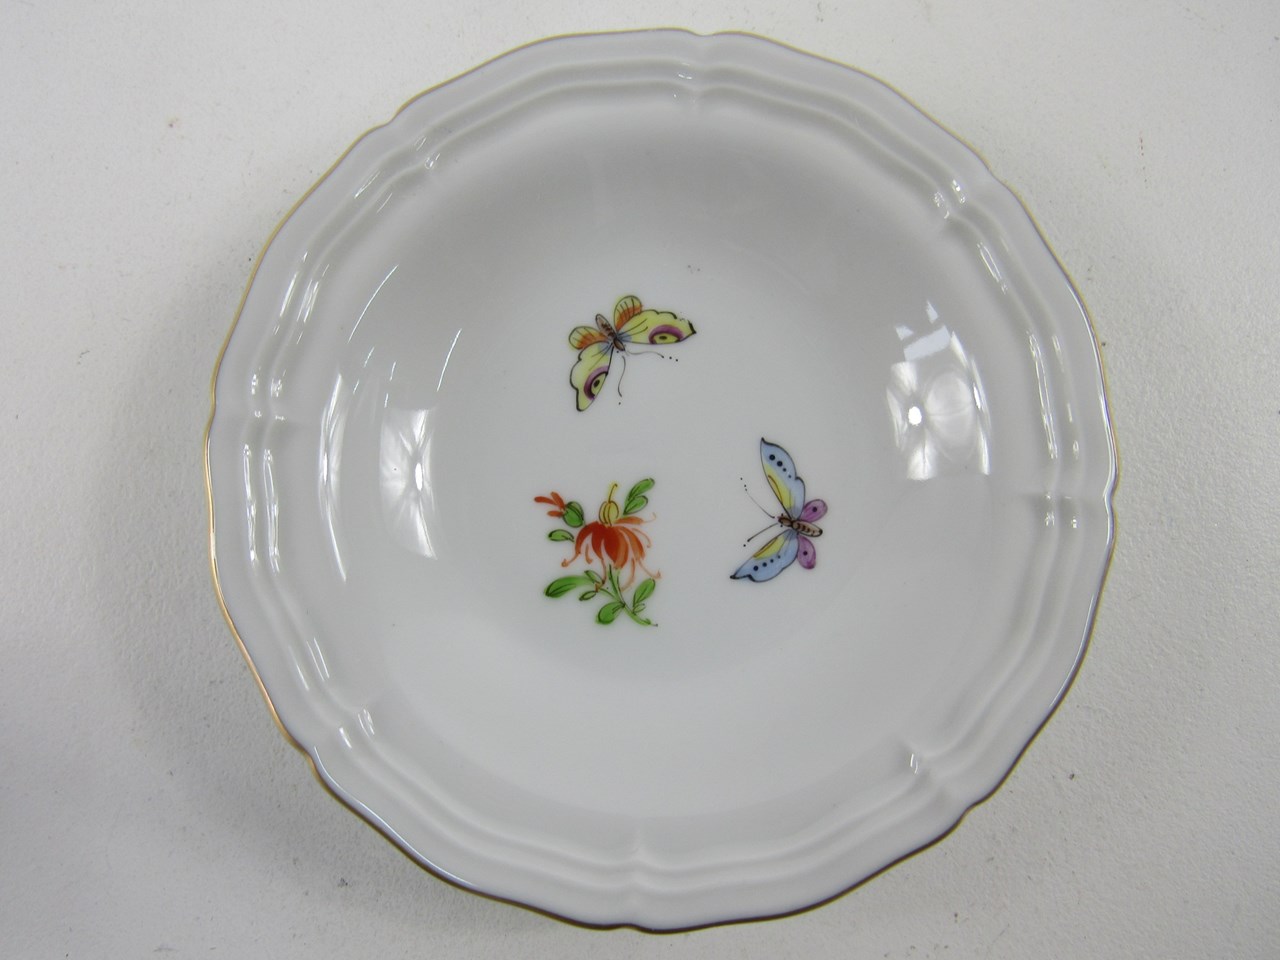 Afbeelding van Höchst Porzellan Konfektteller mit Schmetterling & Blumen Dekor